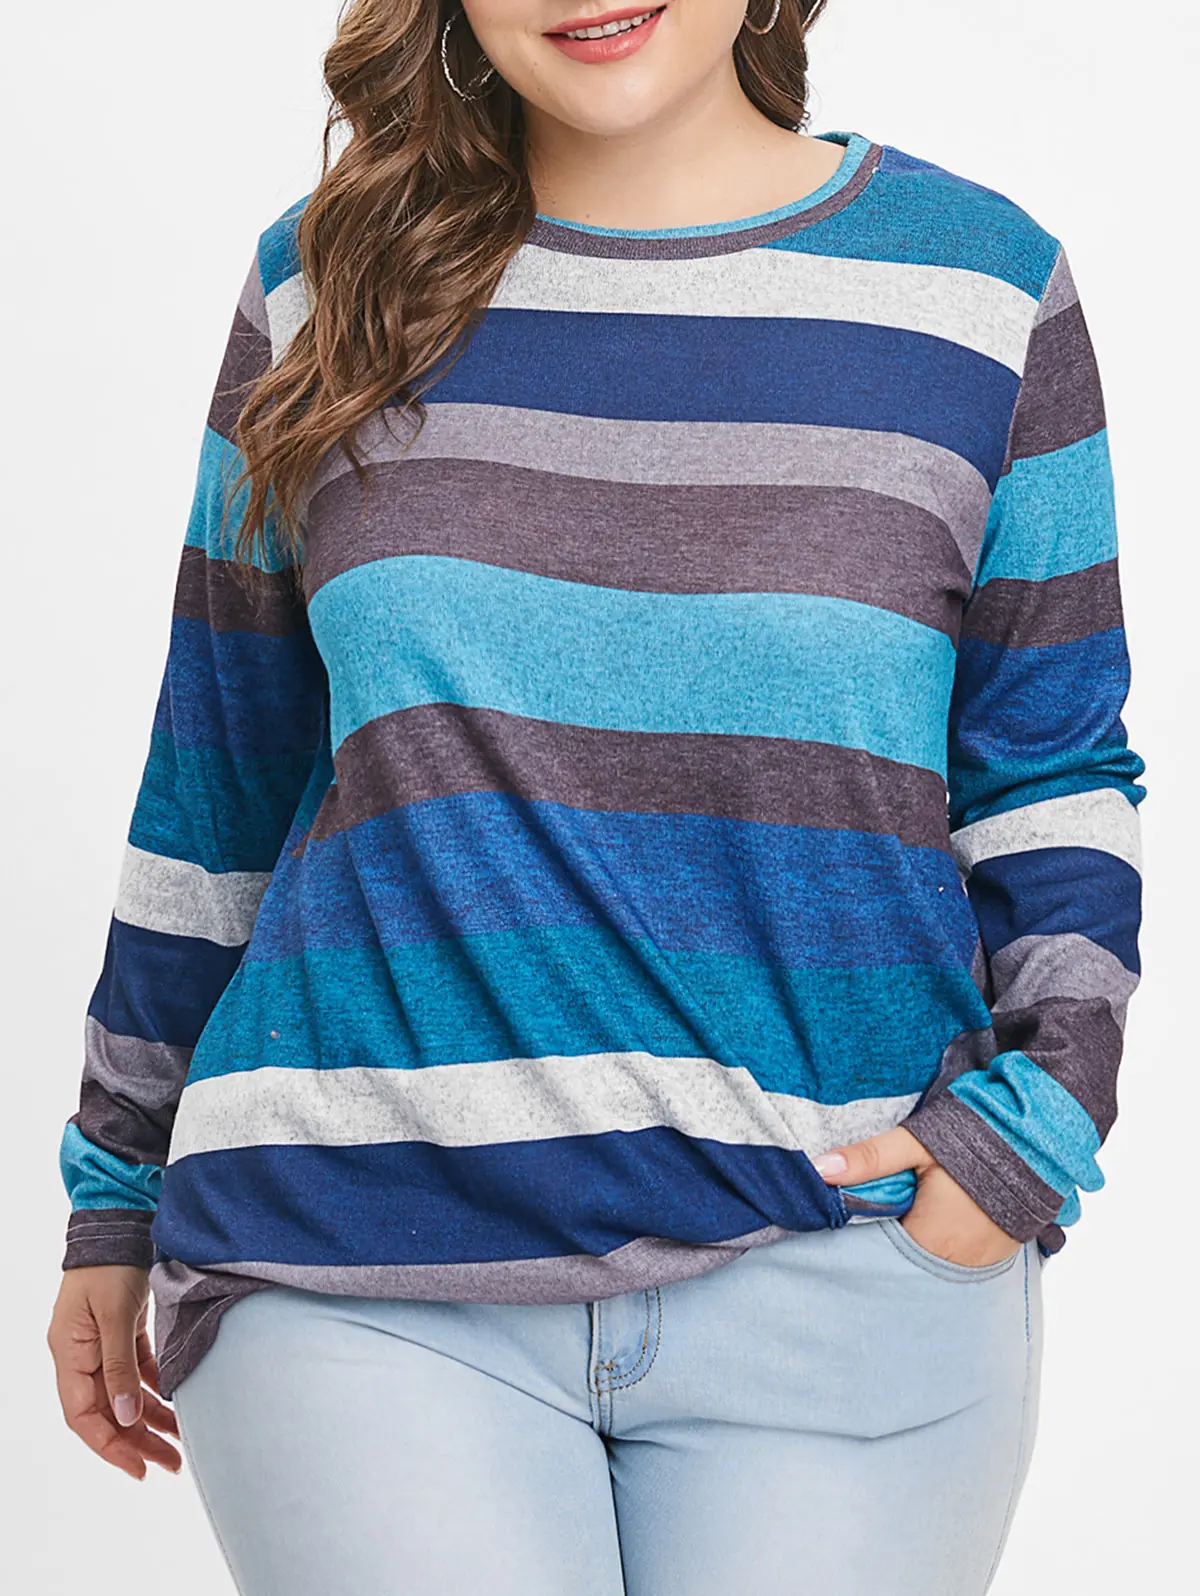 Rosegal размера плюс полосатая панельная футболка Twist, женские пуловеры, Модная хлопковая Футболка с круглым вырезом и длинным рукавом, женские топы, футболки, одежда - Цвет: Blue